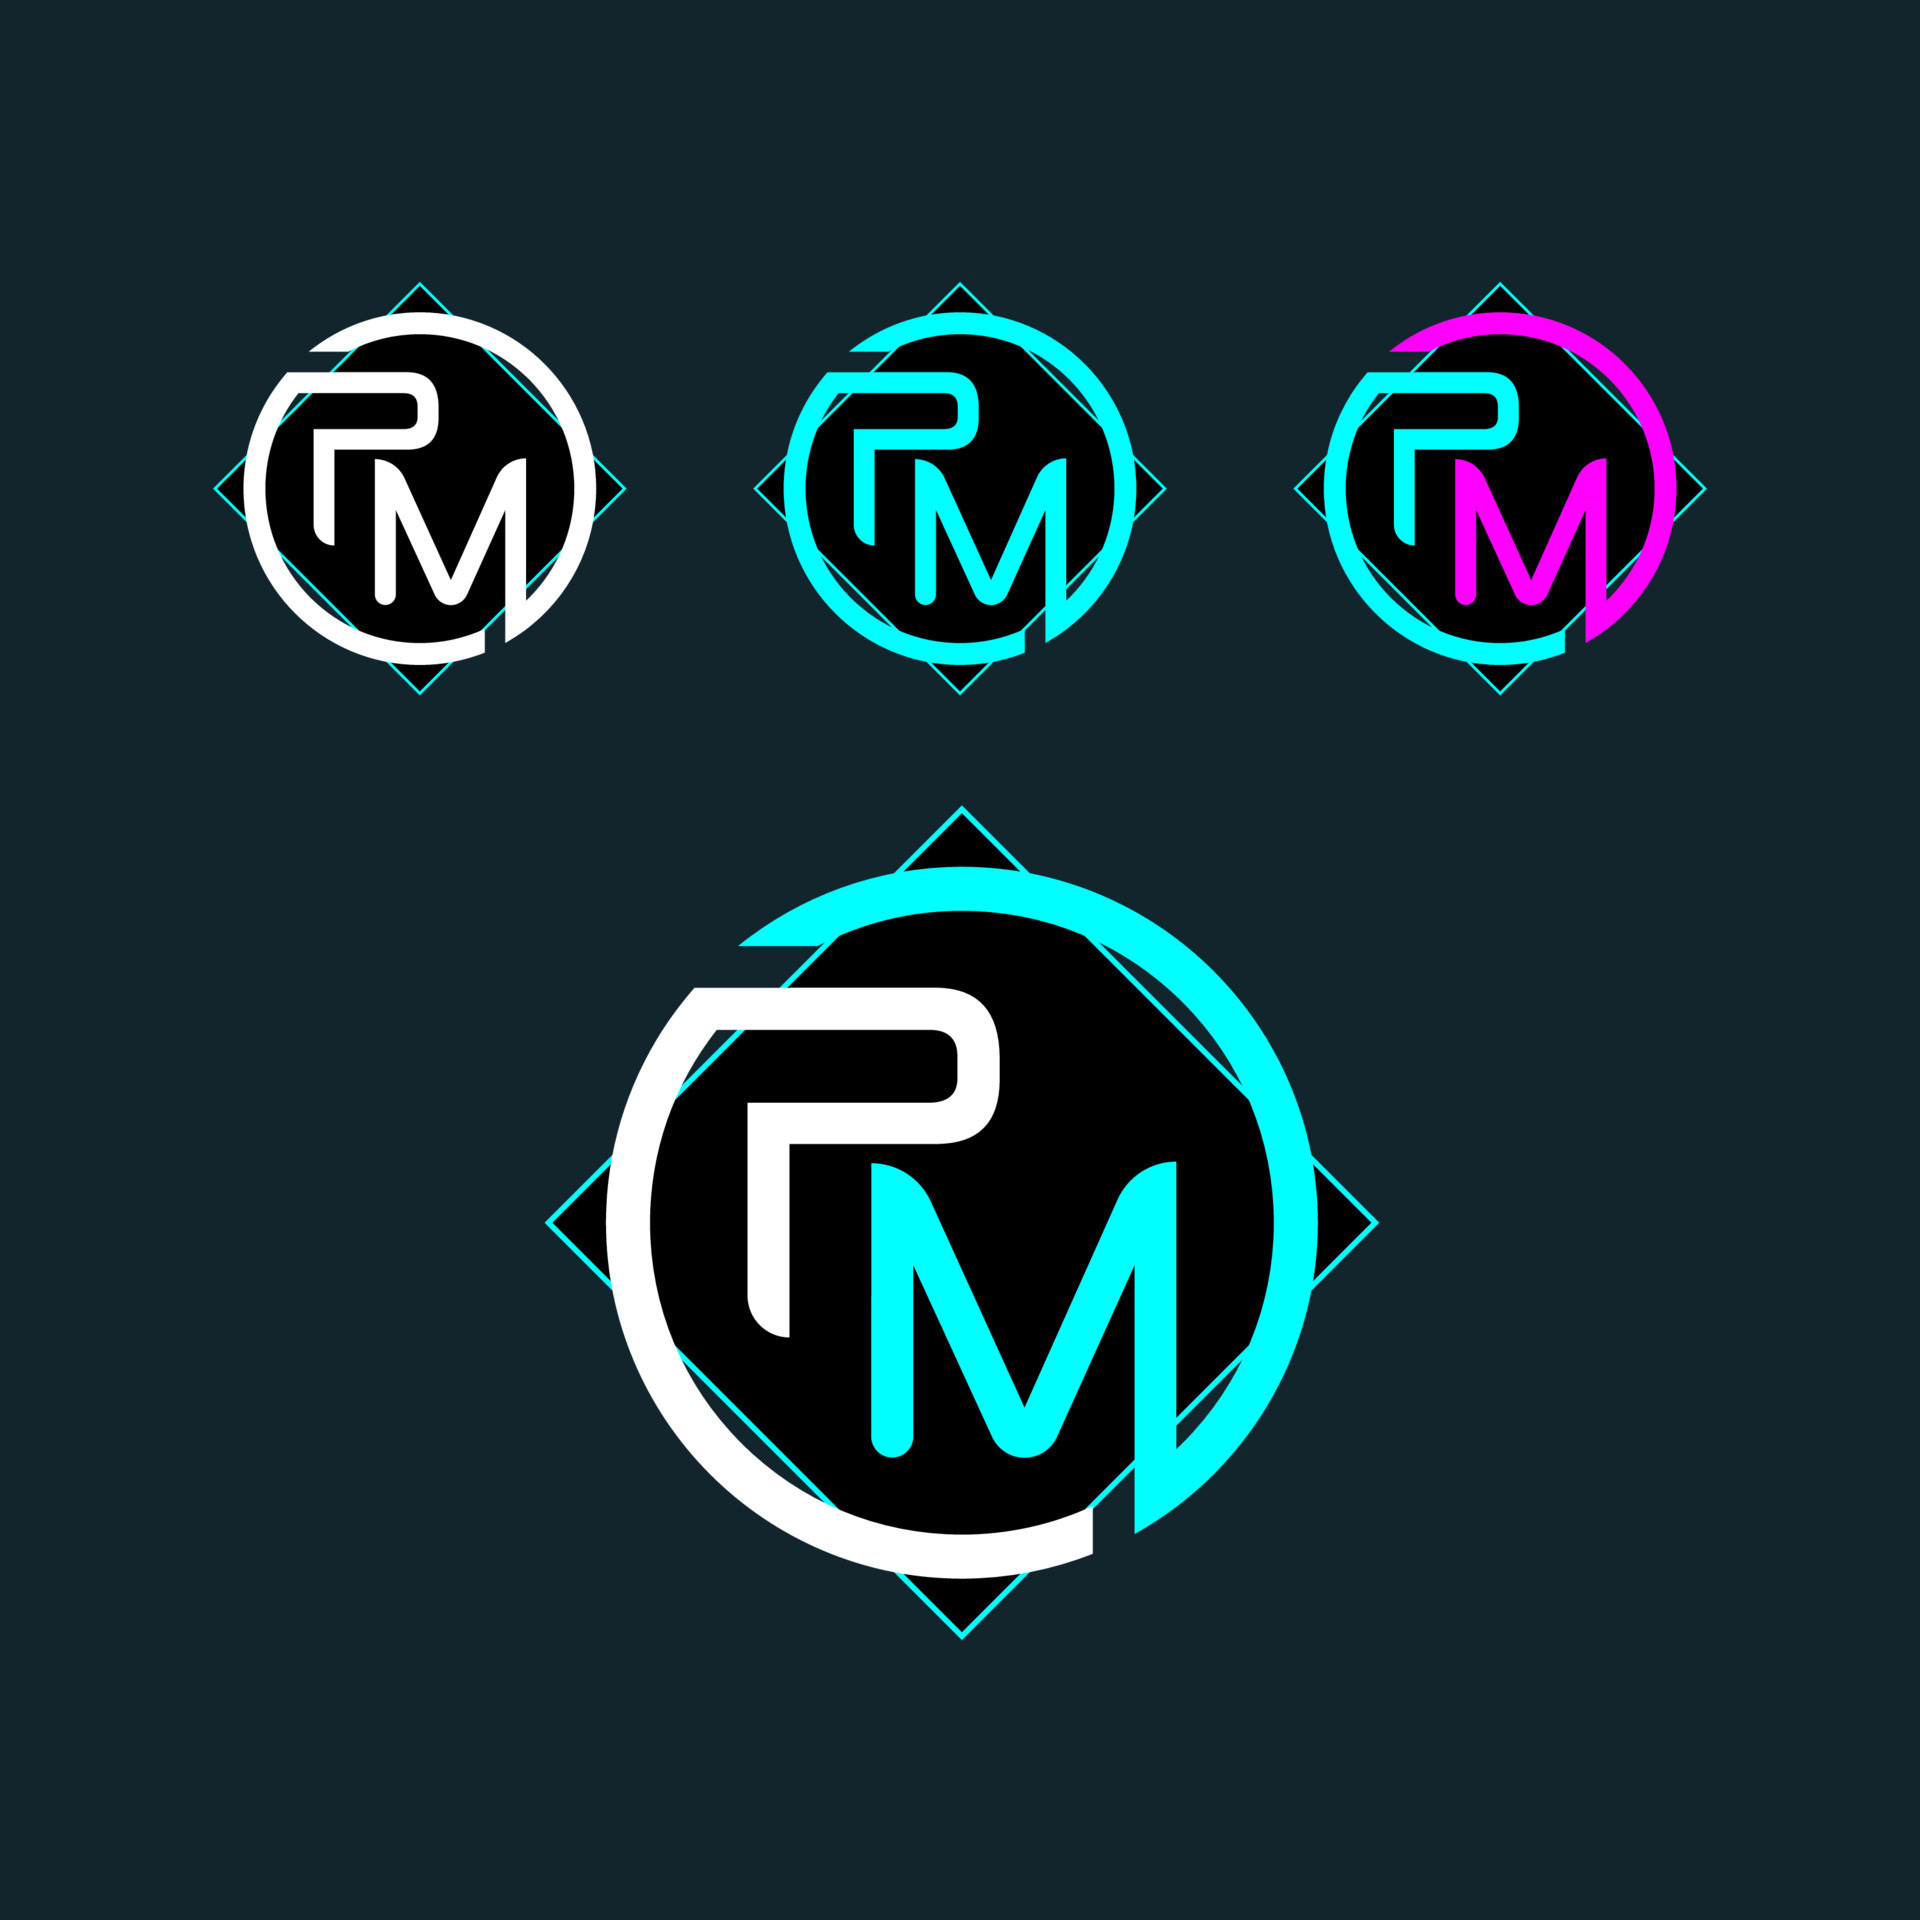 PM MP trendy letter logo design 21736429 Vector Art at Vecteezy